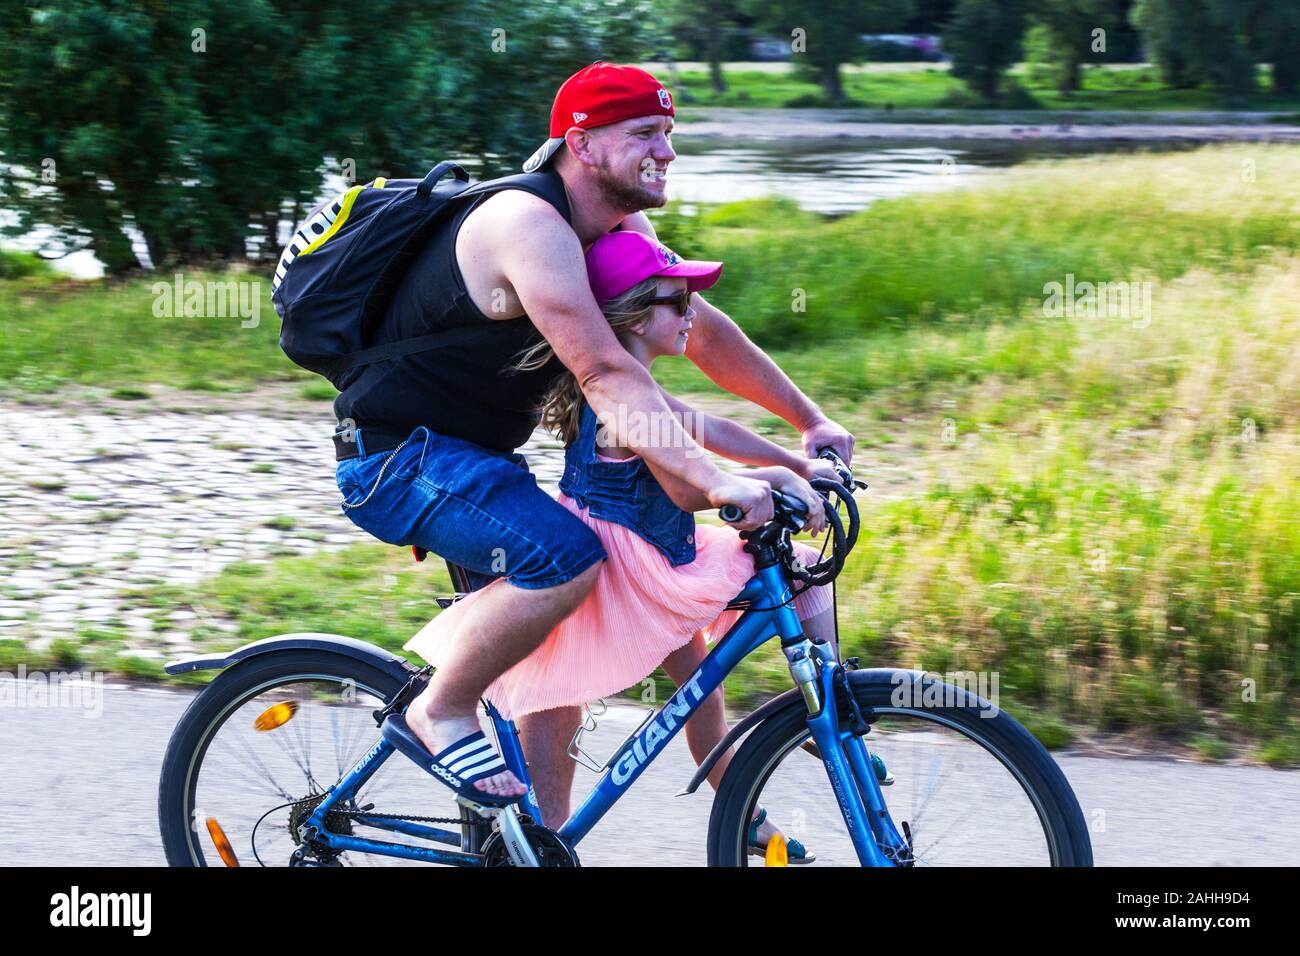 Père et fille profitant d'une promenade en vélo sur une piste cyclable le long de la rivière de l'Elbe à Dresde Saxe Allemagne Vie active Banque D'Images